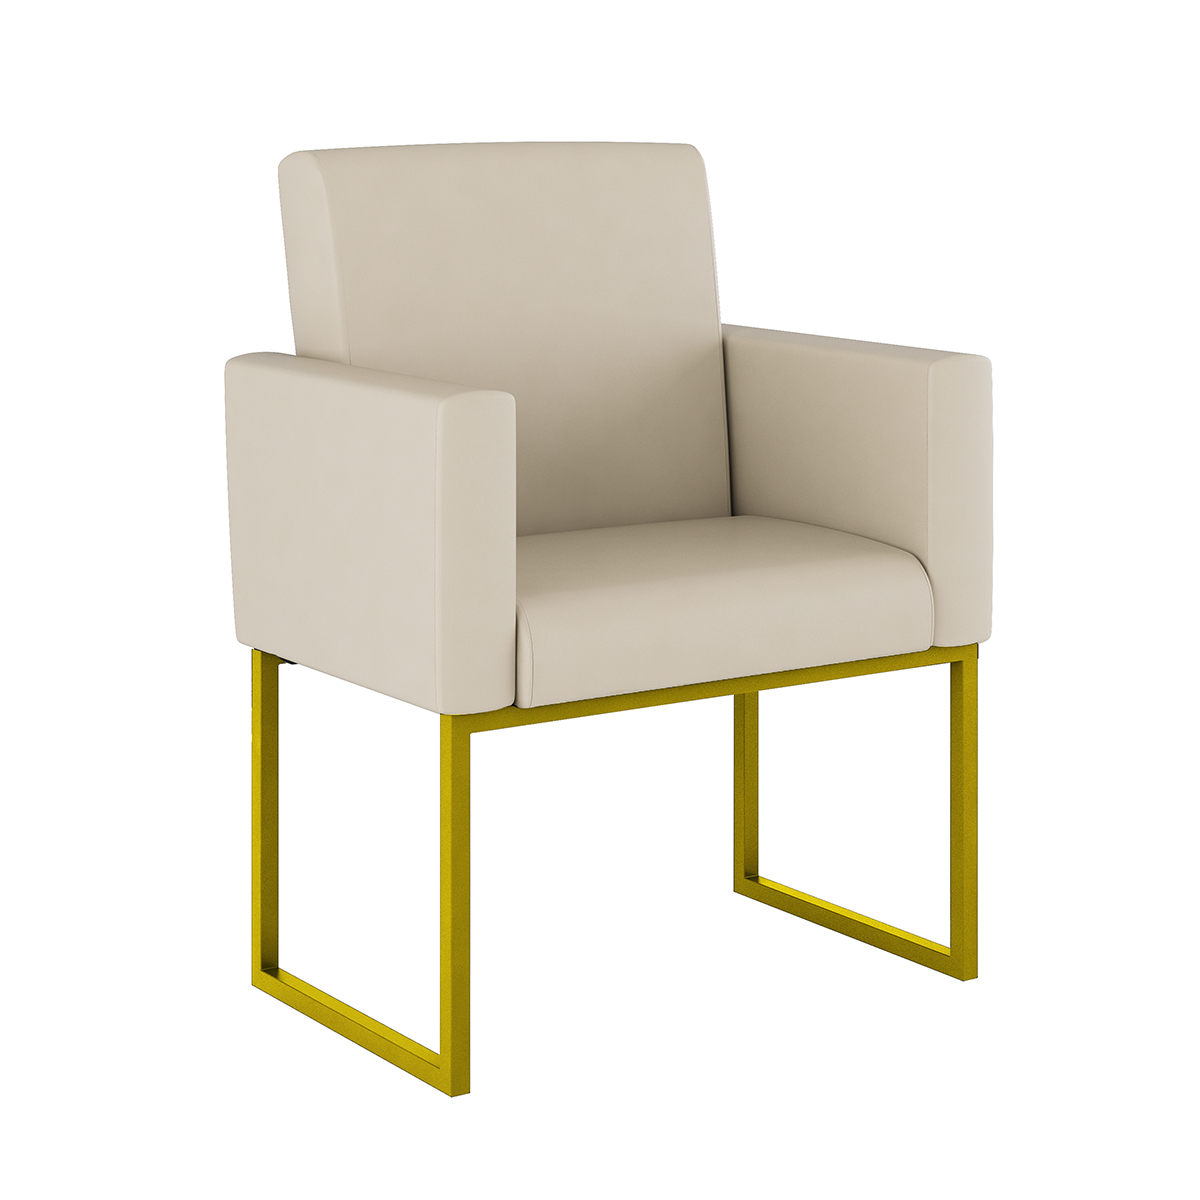 Poltrona Cadeira Decorativa Recepção Base de Ferro Dourada:courino Bege